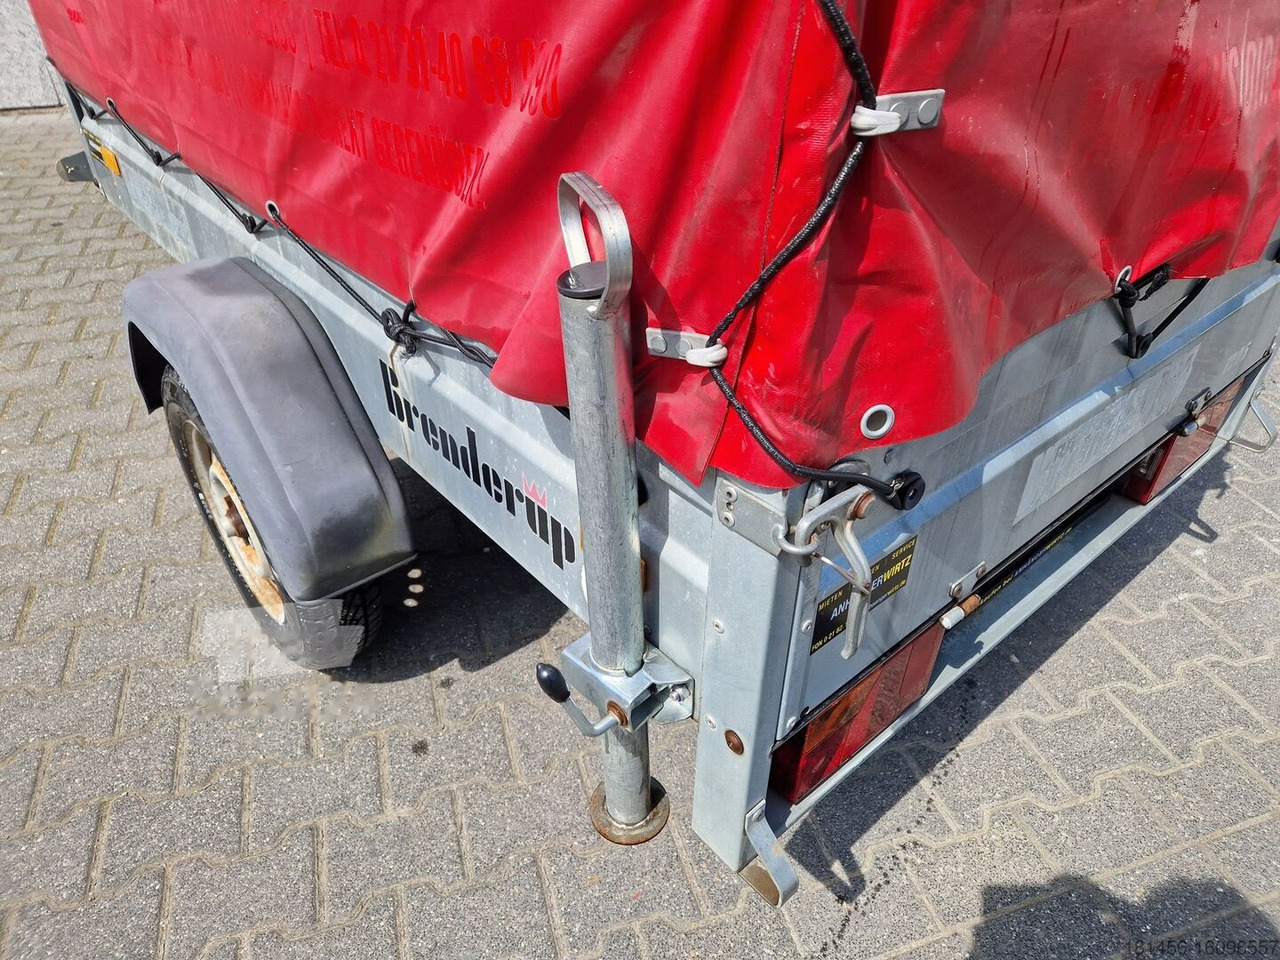 Biltrailer Brenderup Anhänger 750kg mit Hochplane gebraucht: billede 8